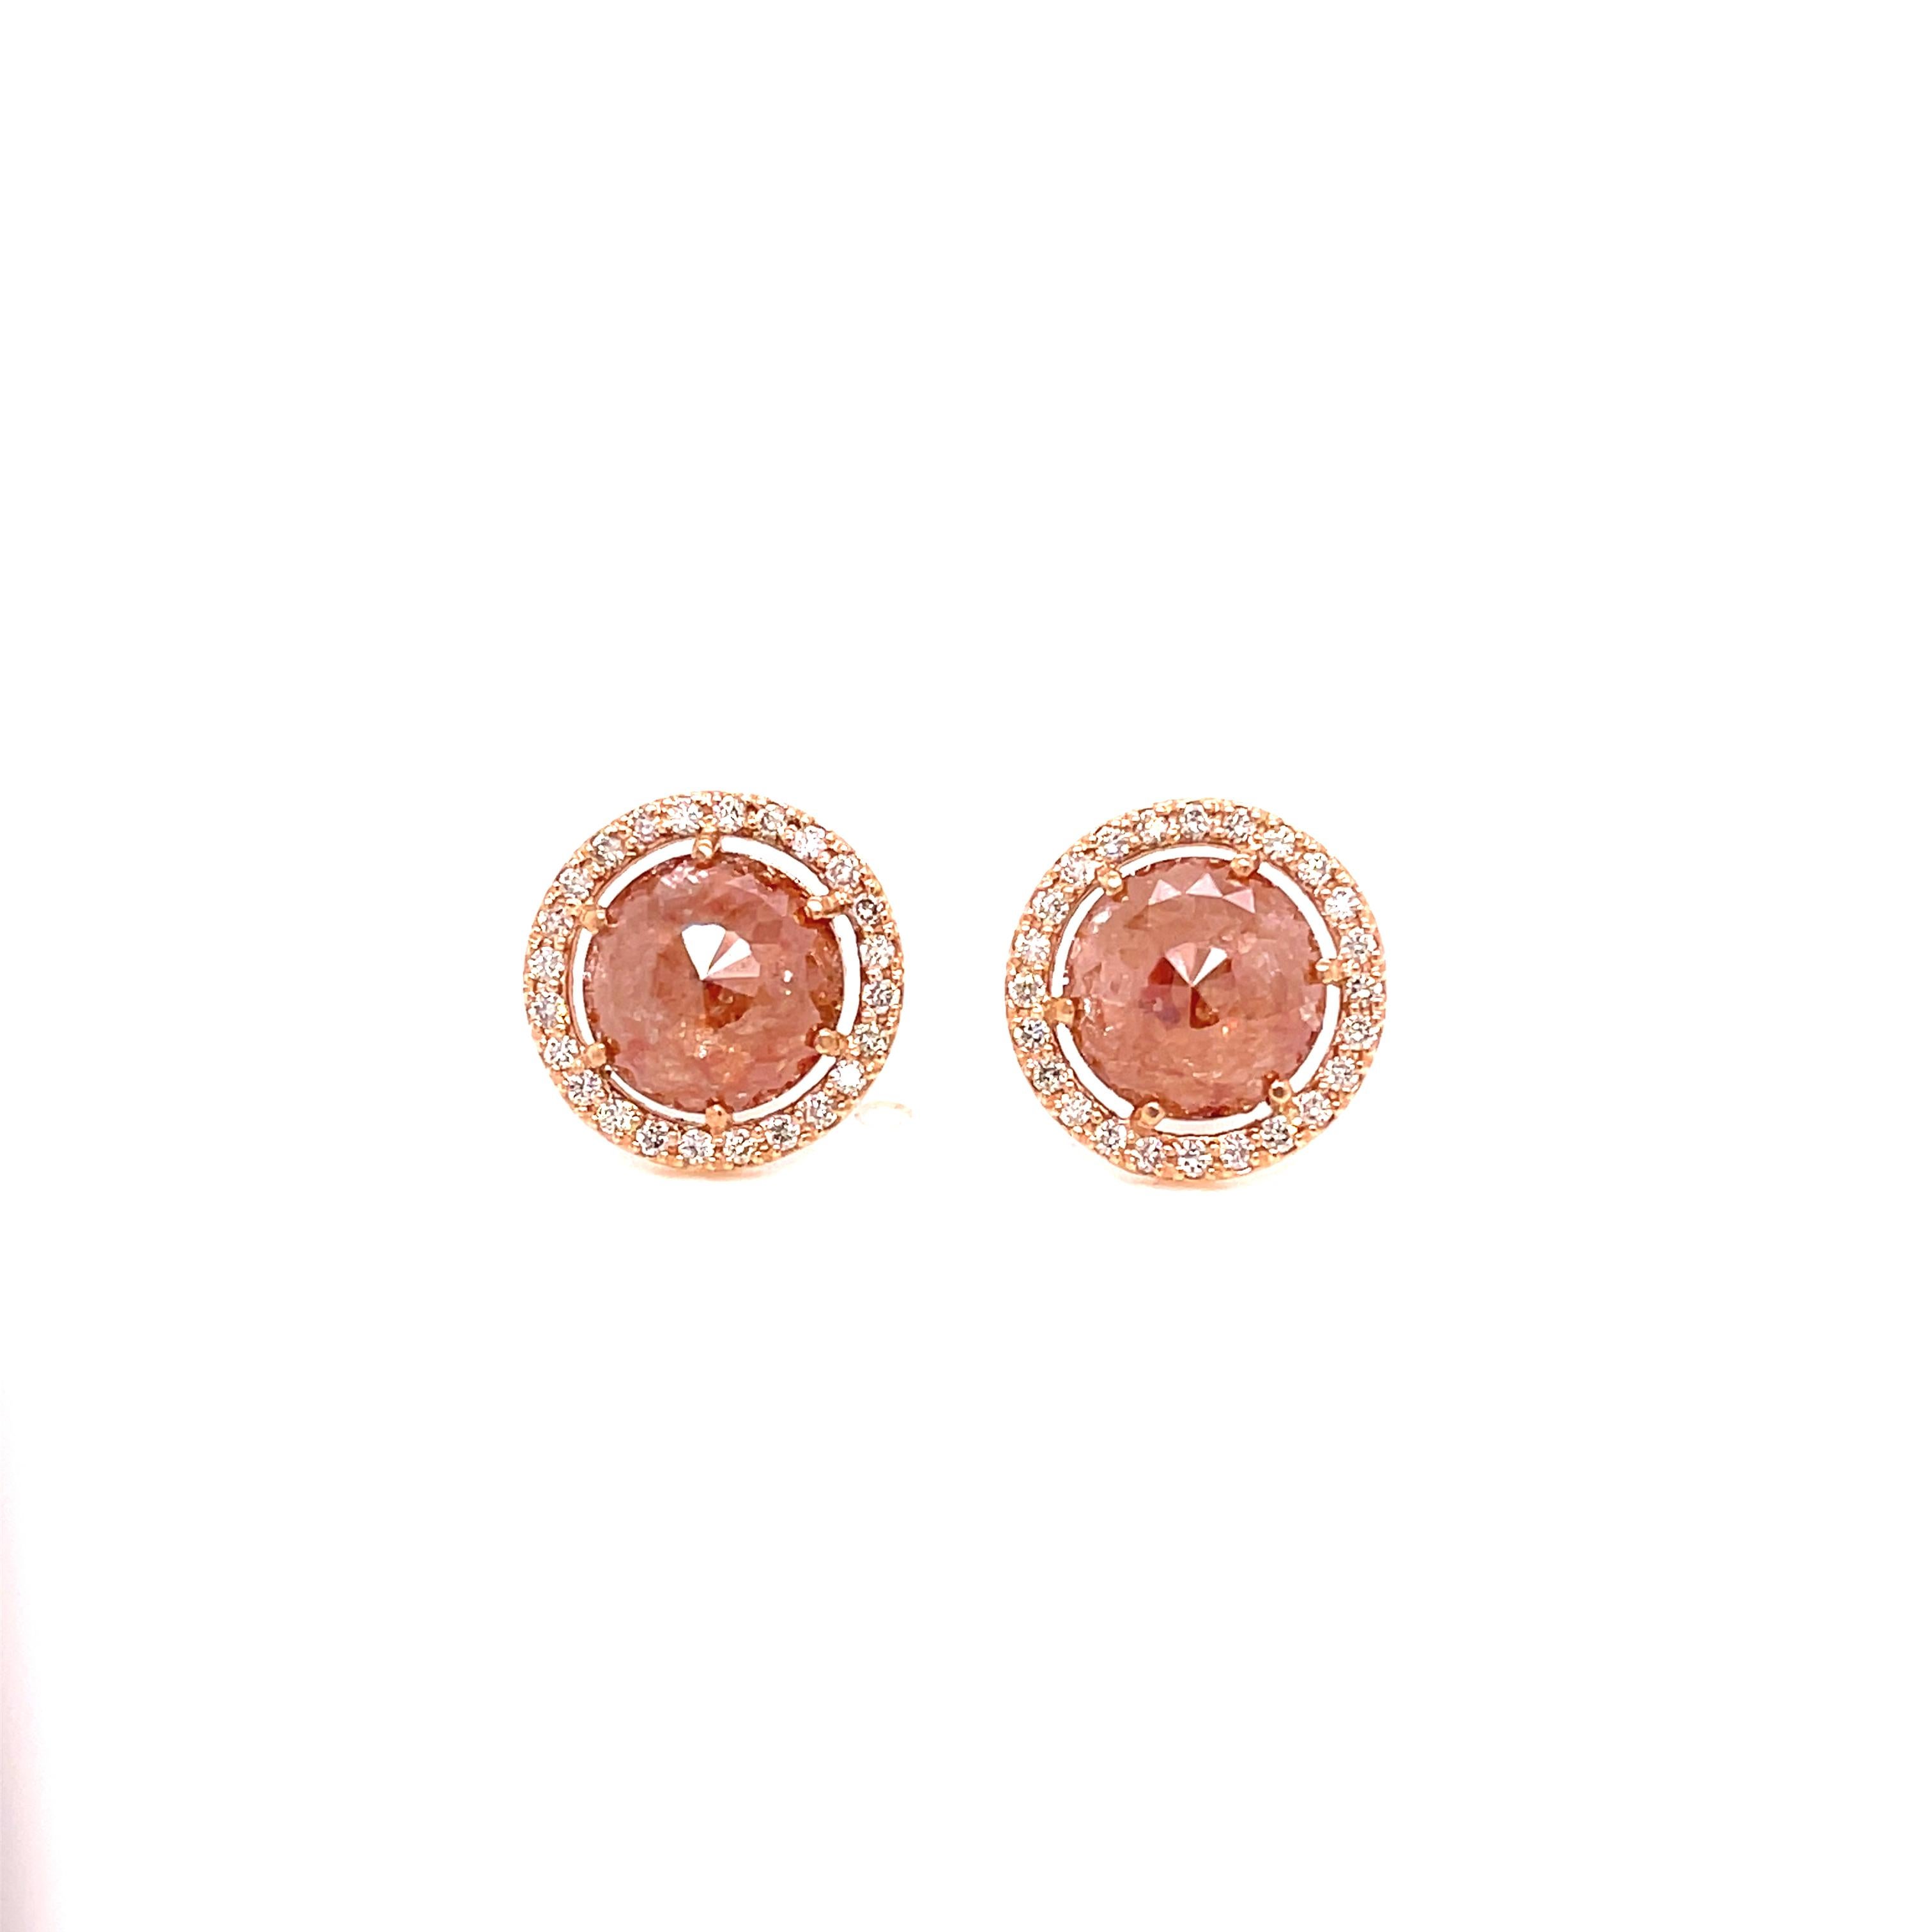 Une paire de clous d'oreilles en or rose 18 carats sertis de 2 diamants bruns rosés de 4,35ct. et de .38tcw. de diamants bruns clairs à facettes dans un halo autour des diamants, avec une paire de boucles d'oreilles amovibles en or rose 18 carats